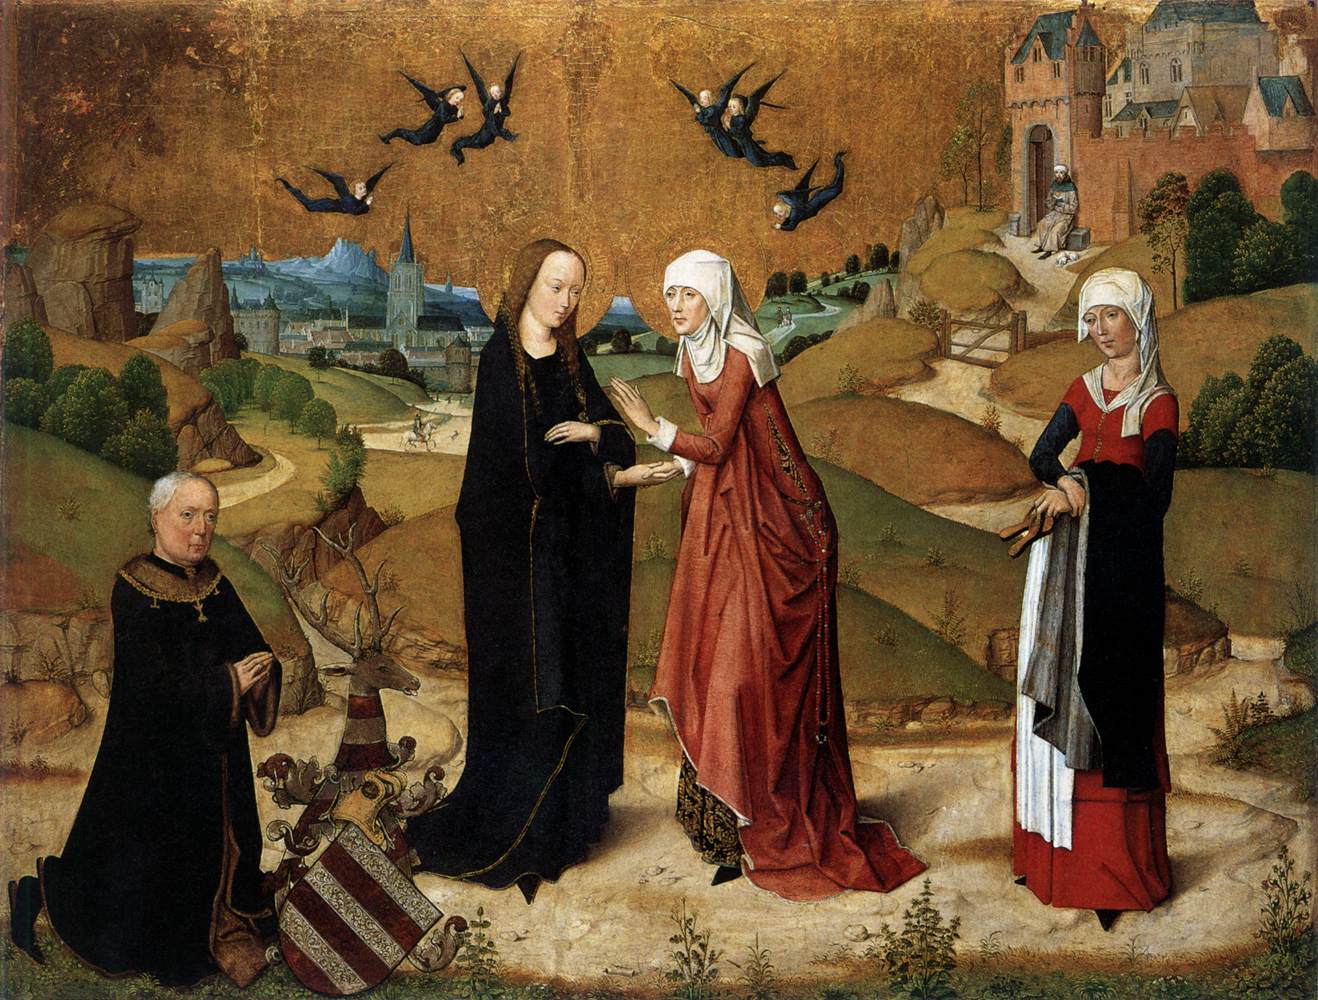 Мастер Жизни Богоматери. Встреча Девы Марии и Елисаветы с предстоящим донатором. 1460-1480.